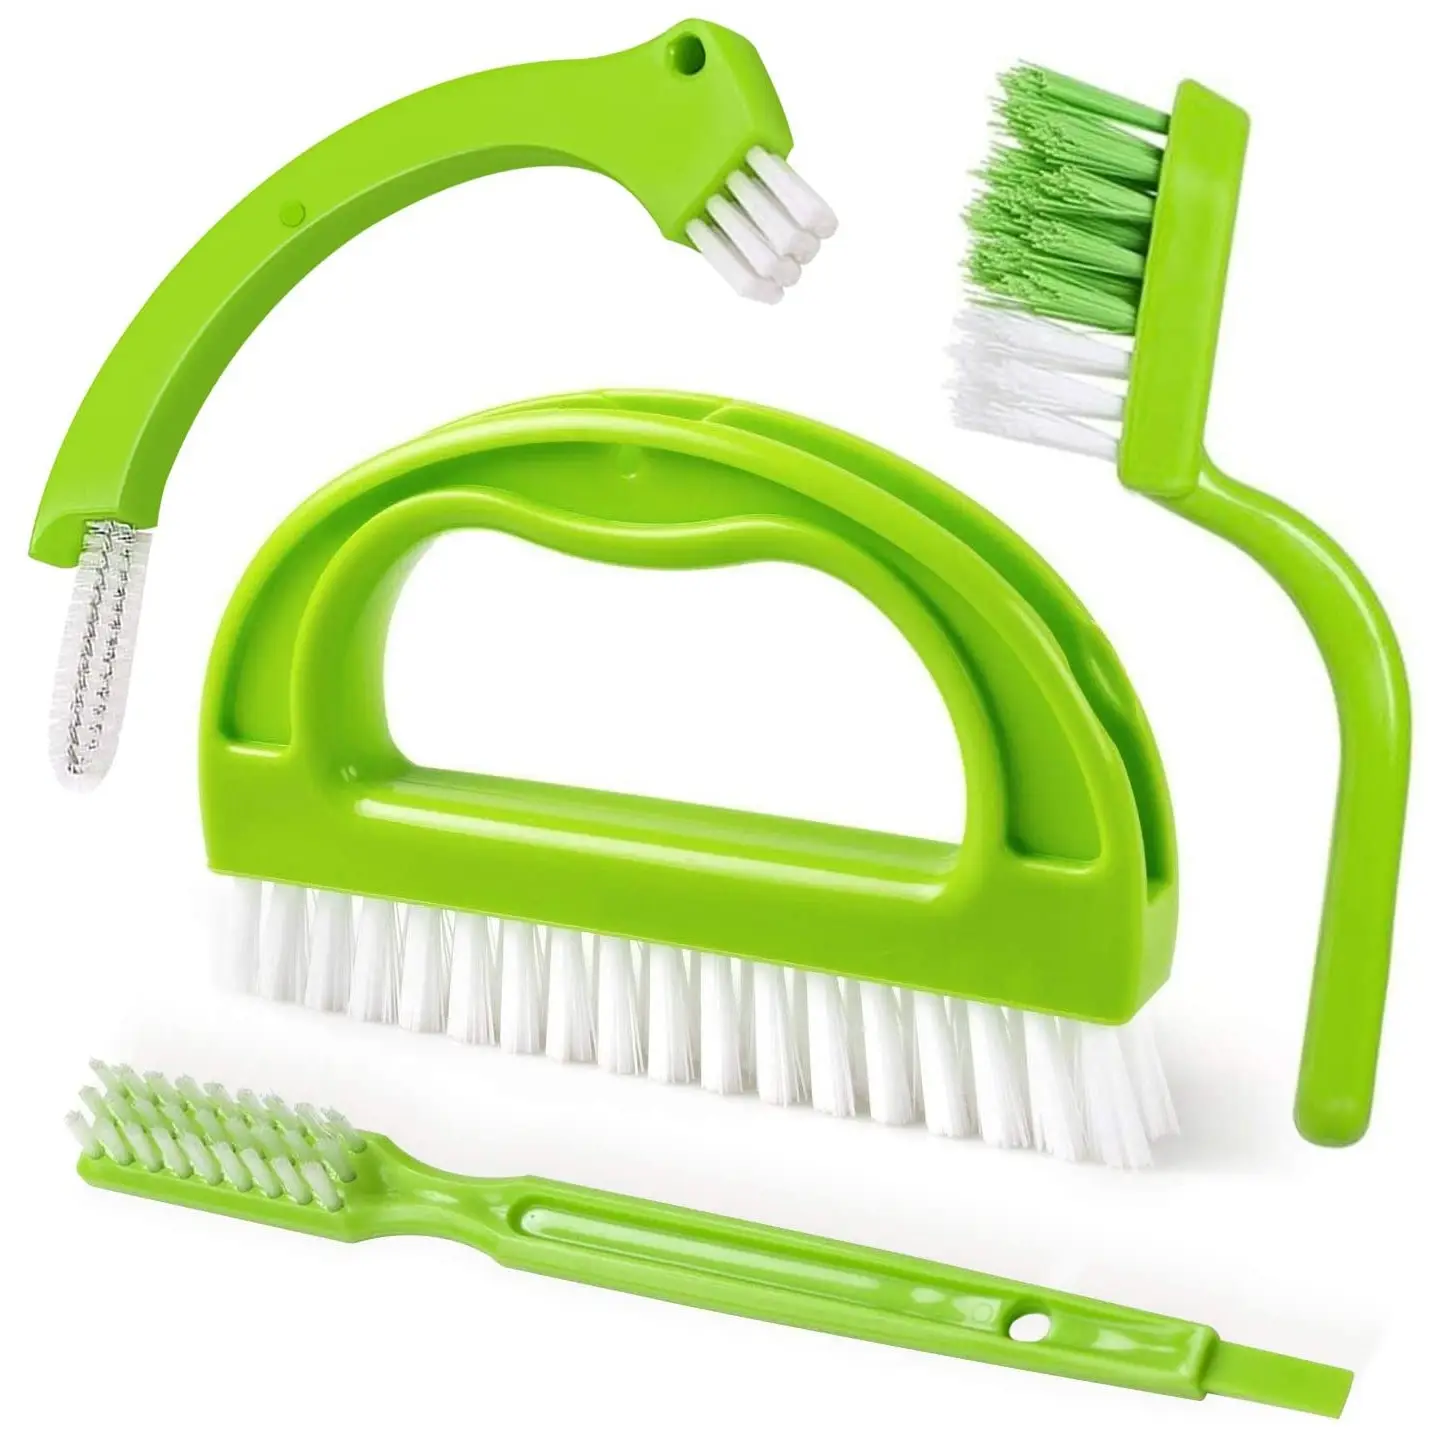 TDF kiremit harcı fırçalama temizleme fırçası harç temizleyici fırça 4 in 1 kat el çevre dostu